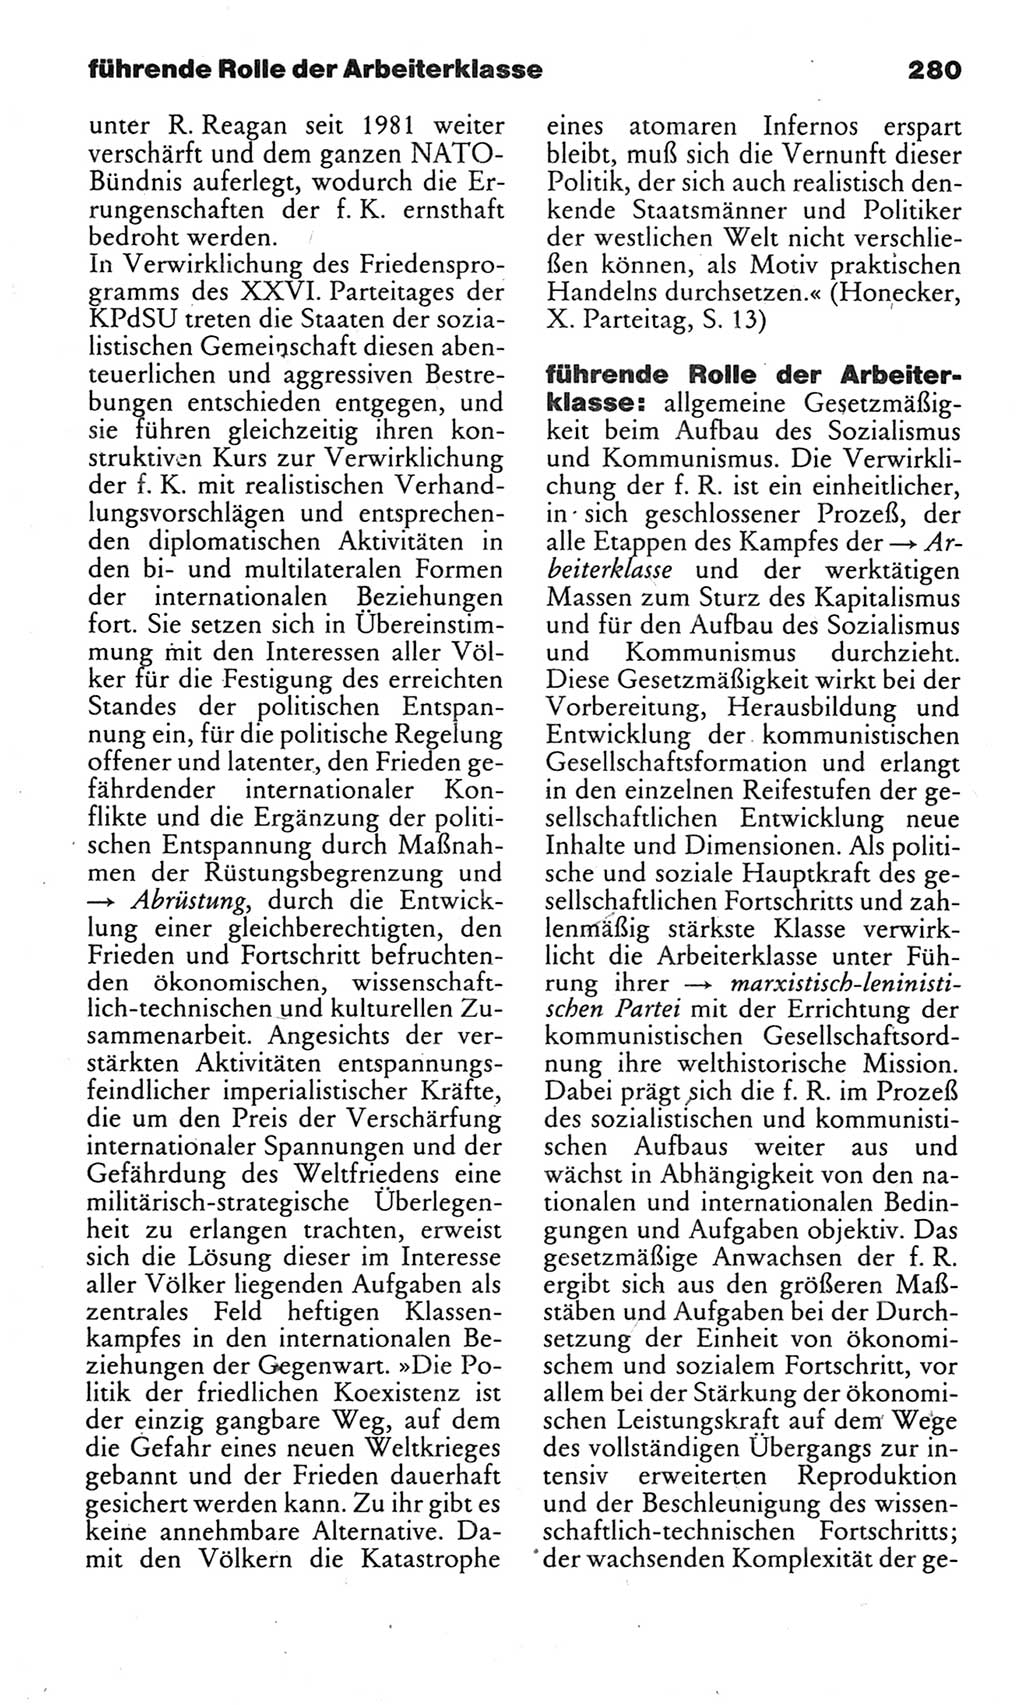 Kleines politisches Wörterbuch [Deutsche Demokratische Republik (DDR)] 1983, Seite 280 (Kl. pol. Wb. DDR 1983, S. 280)